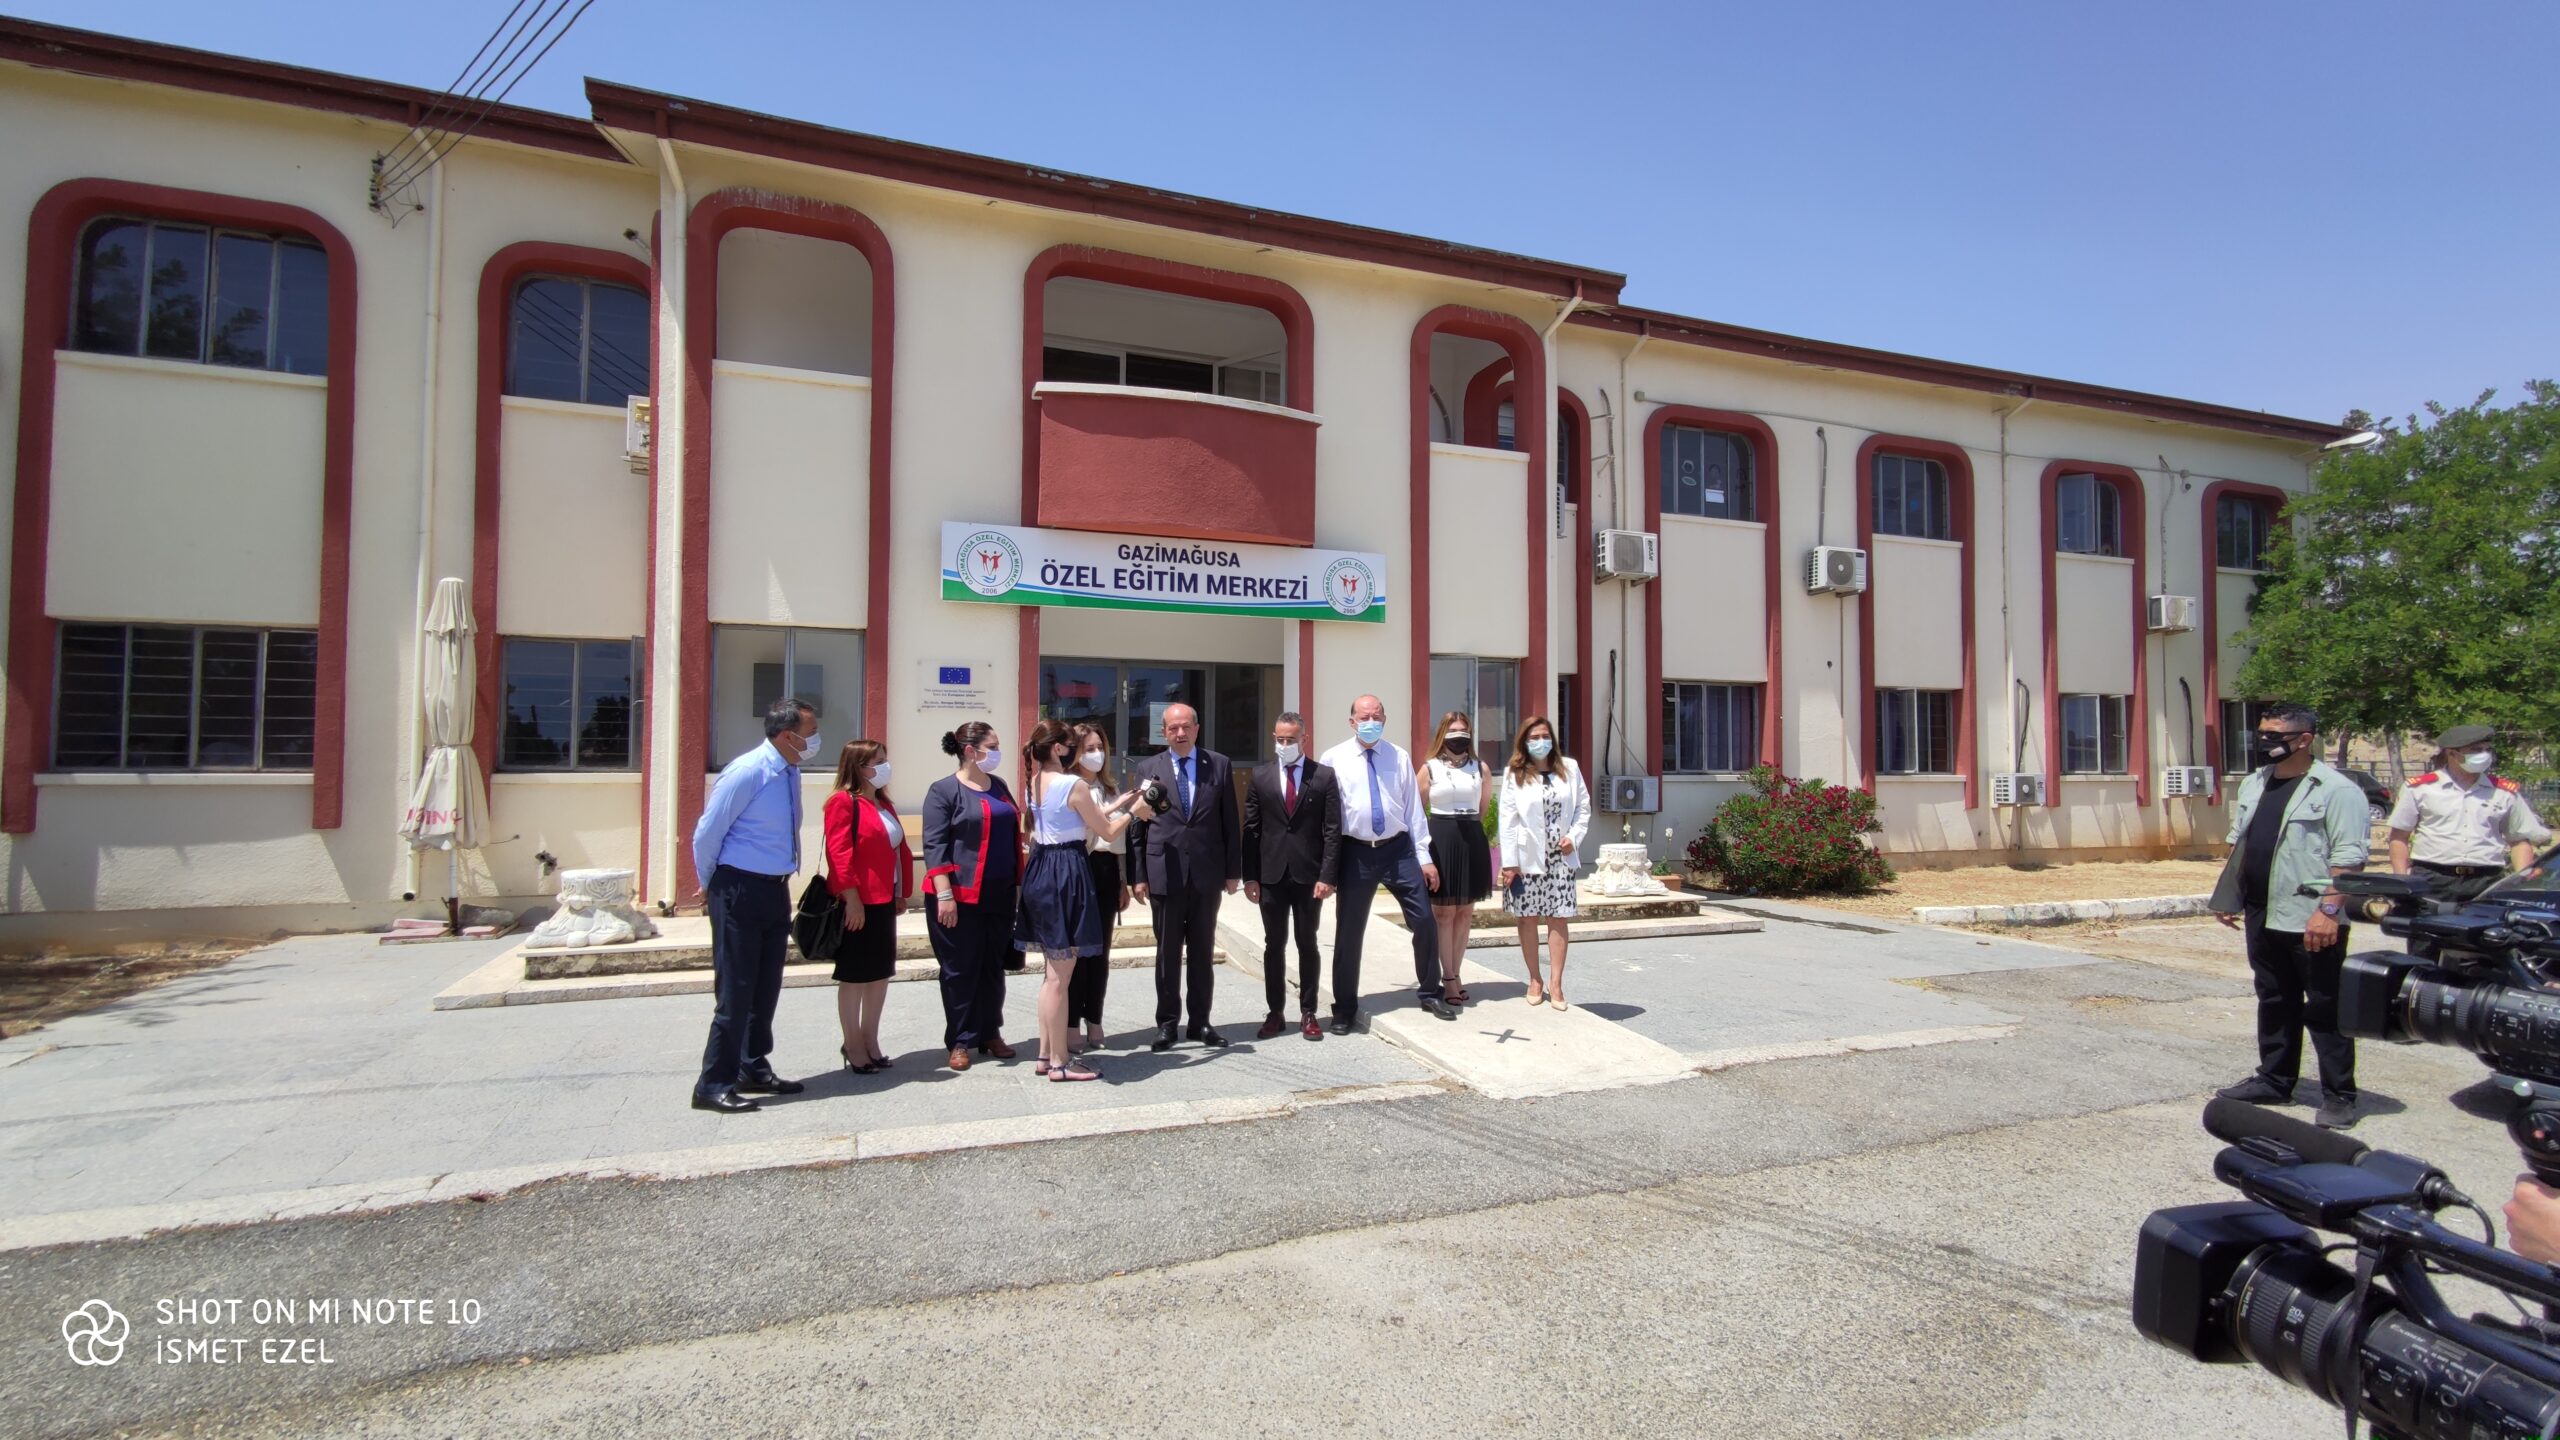 Cumhurbaşkanı Ersin Tatar eşi Sibel Tatar ile birlikte Gazimağusa Özel Eğitim Merkezi’ni ziyaret etti.